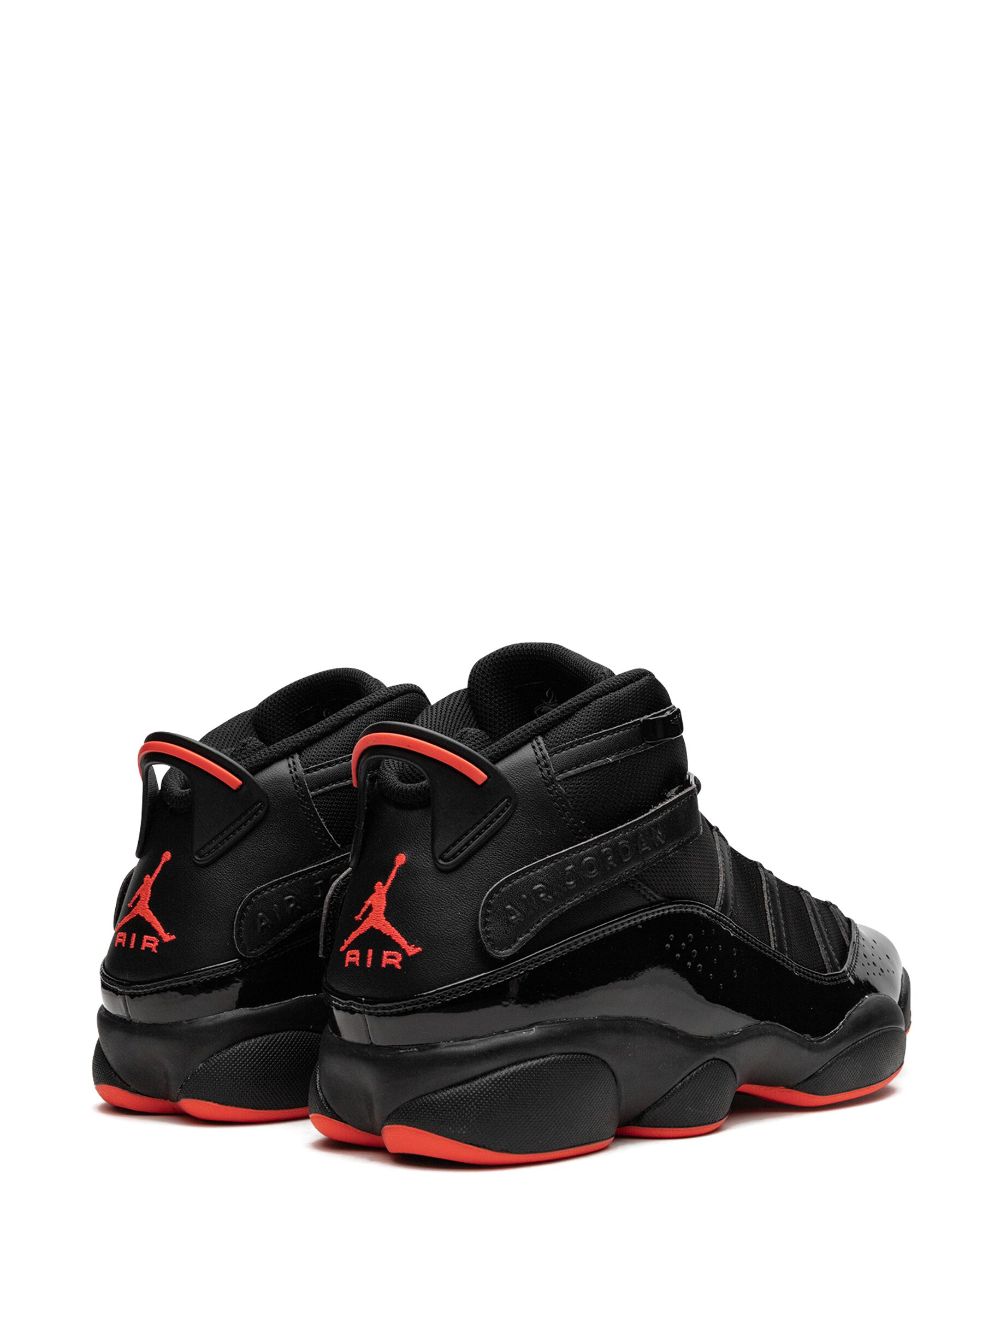 Shop Jordan 6 Rings "black Infrared" Sneakers